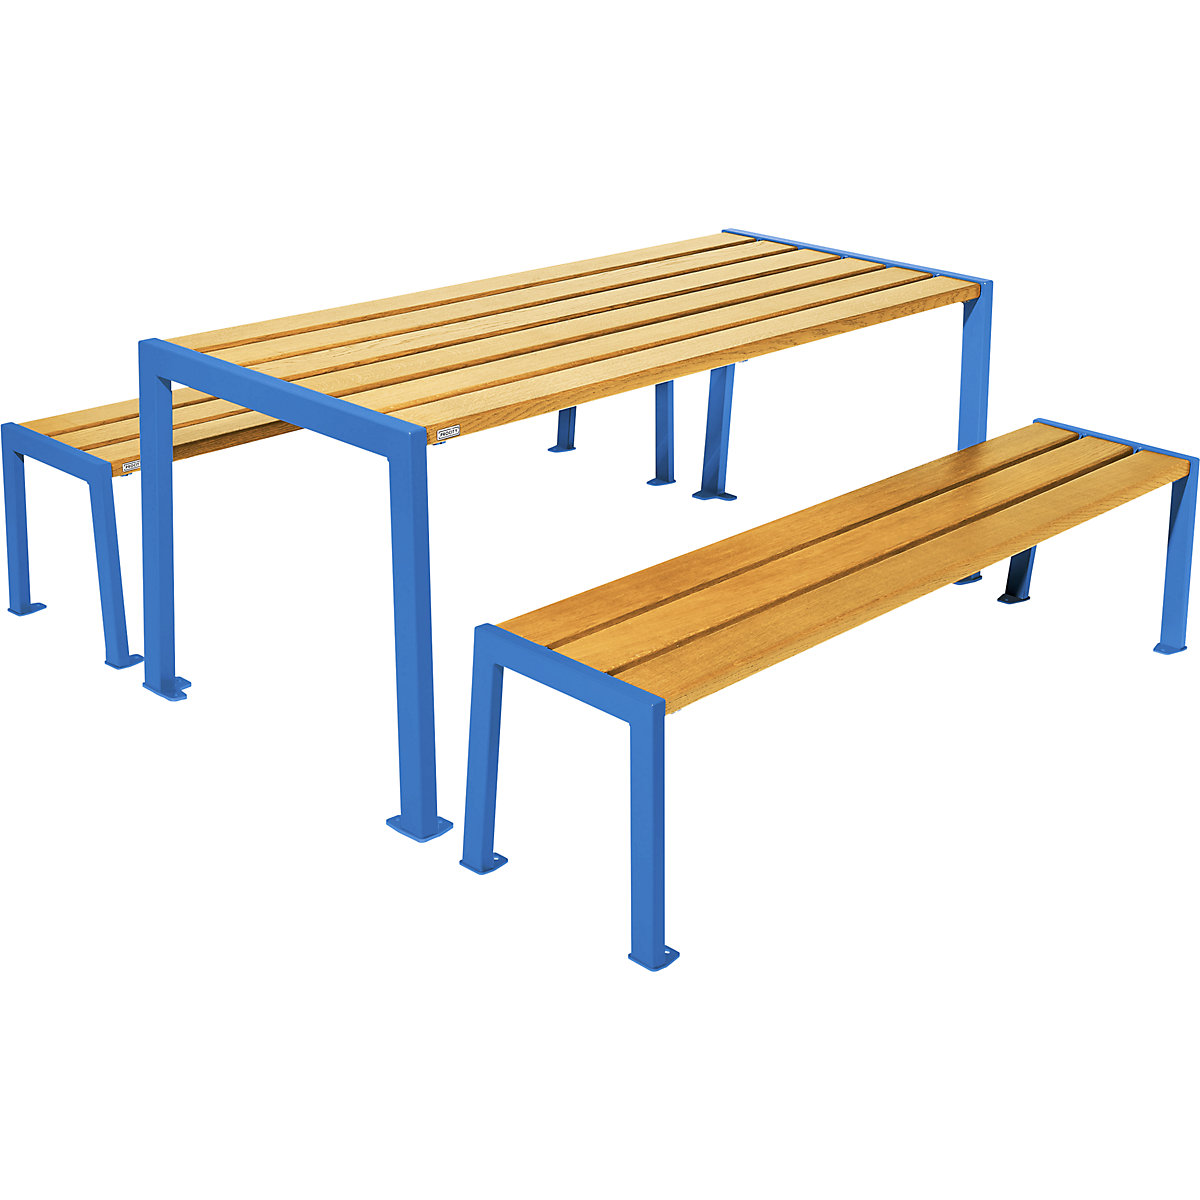 Garnitura mize in klopi Silaos® – PROCITY, dolžina 1800 mm, modre barve / svetli hrast-3